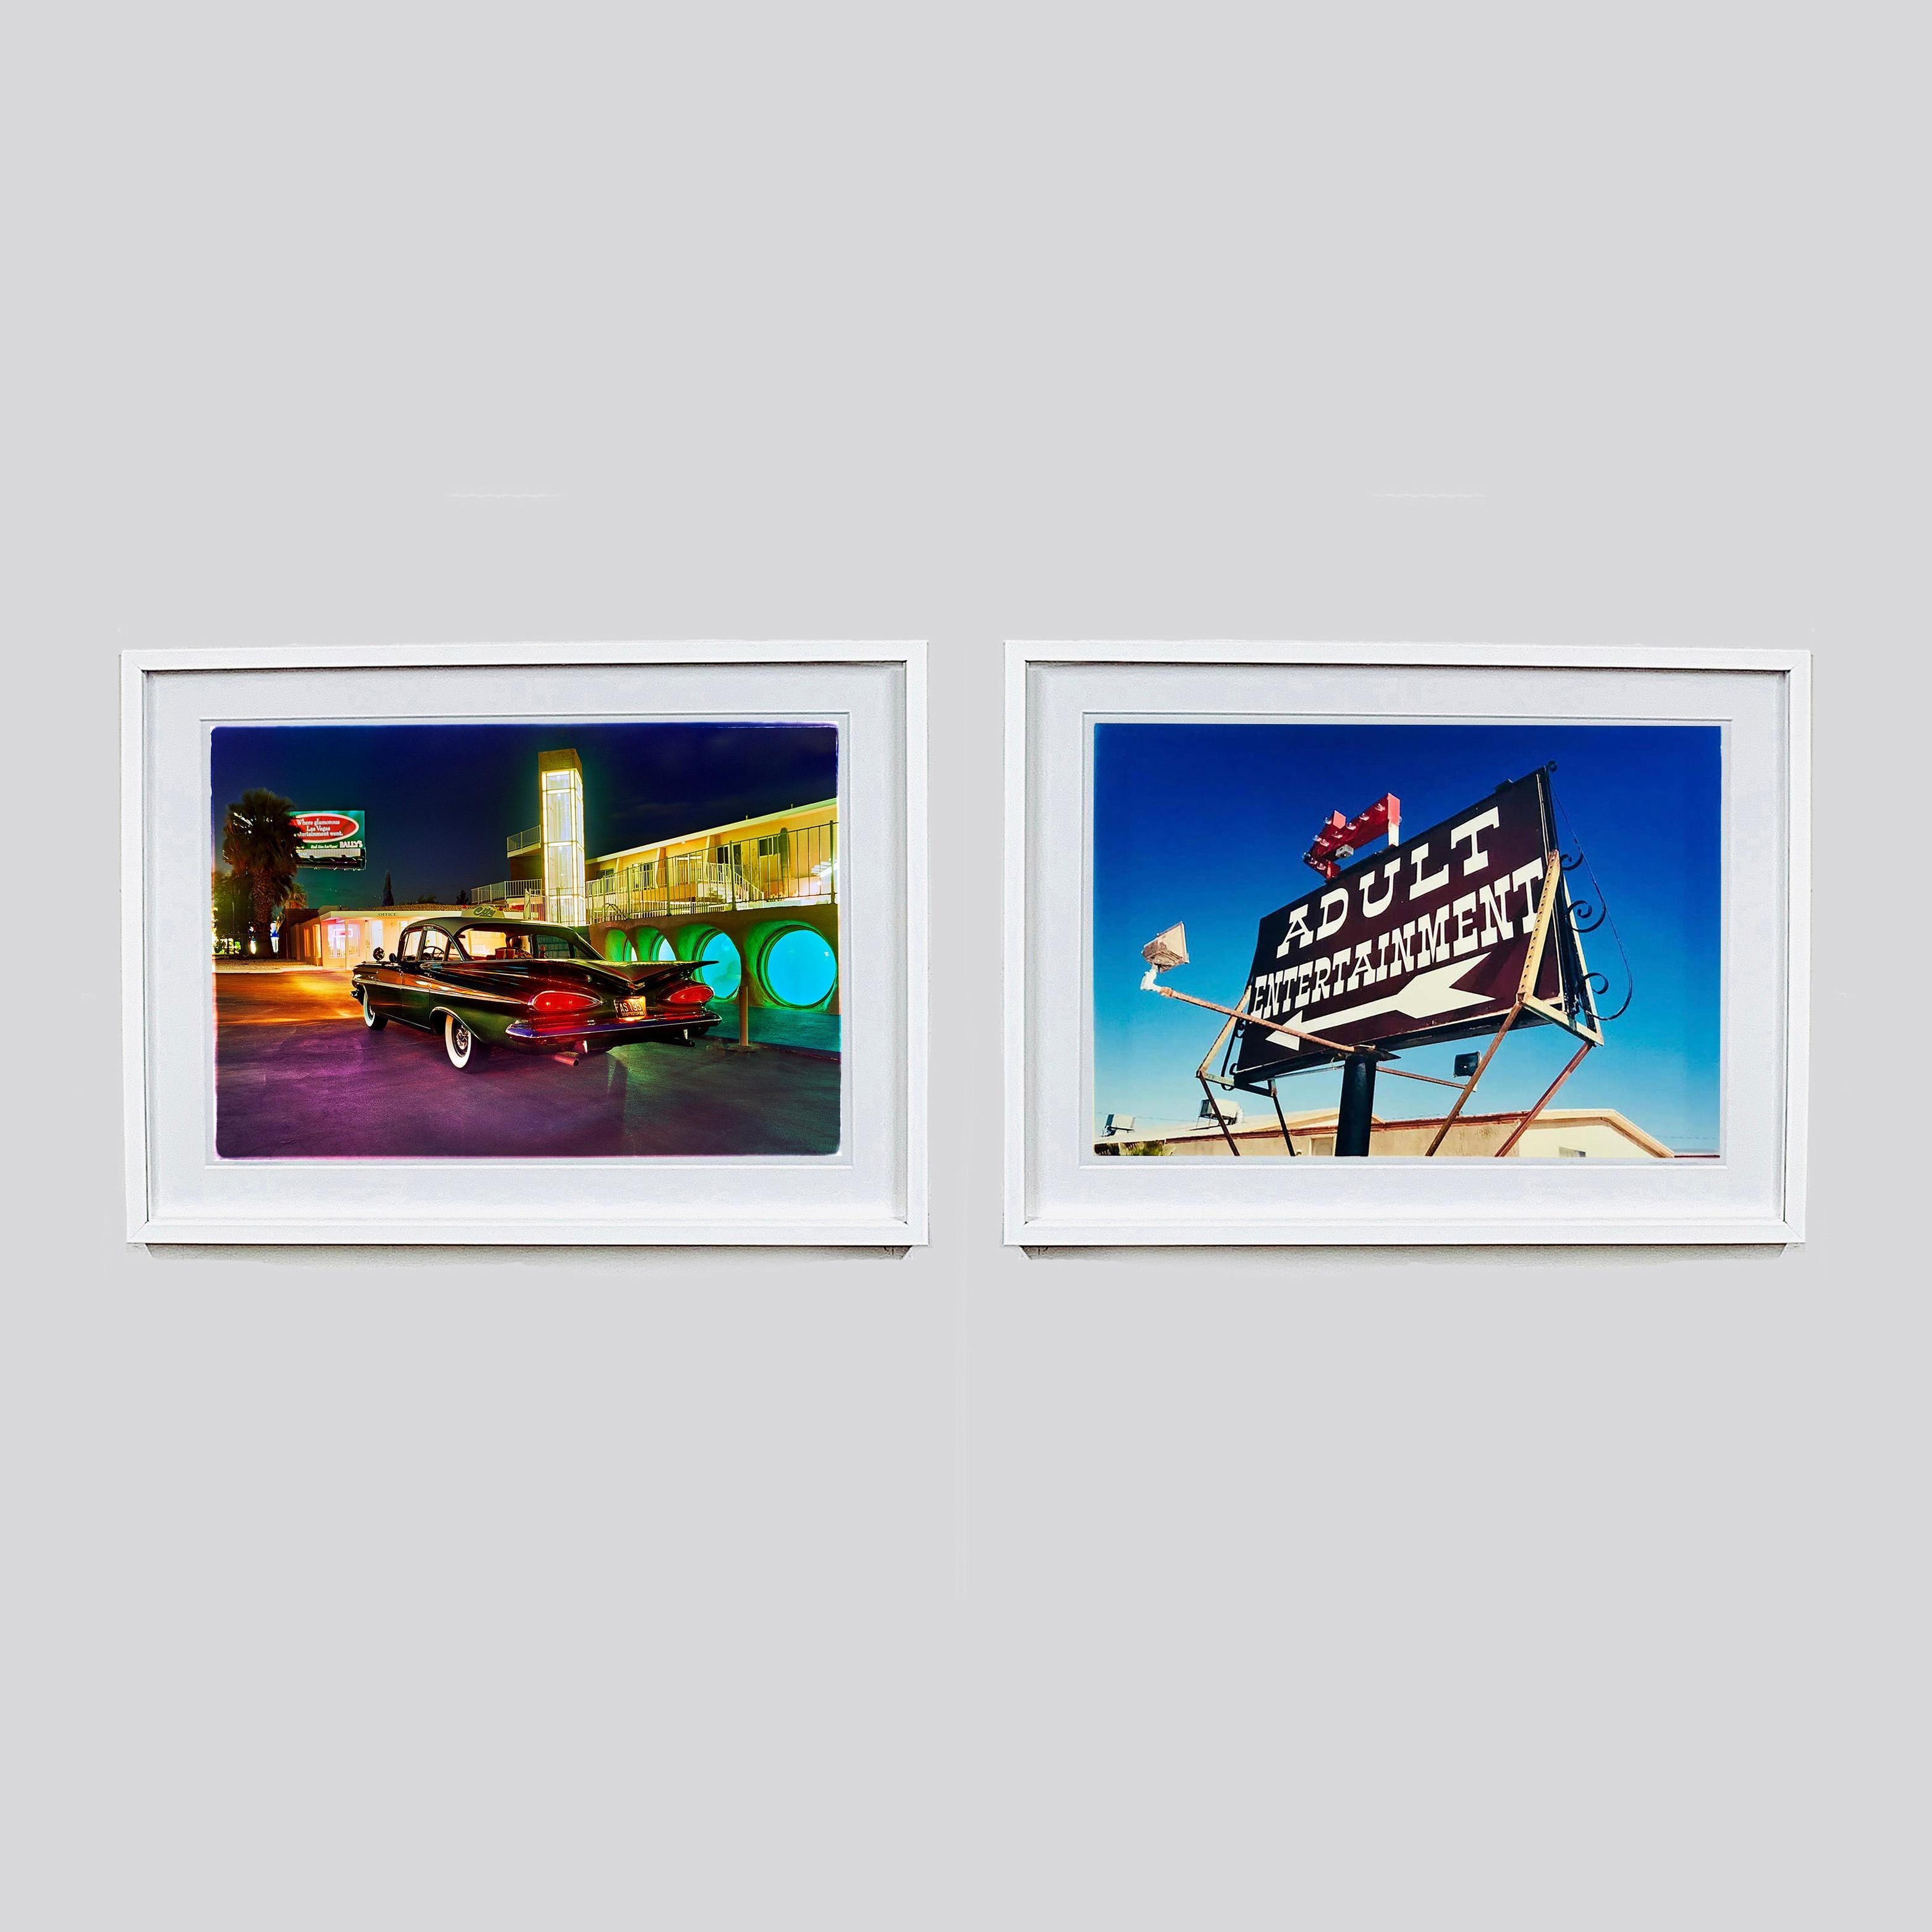 Mit dem filmreifen Glass Pool Motel, das es leider nicht mehr gibt, und einem ikonischen Chevy Bel Air ist es ein perfektes Beispiel für ein verlorenes Vegas. Dies ist eine der klassischen Americana-Fotografien von Richard Heeps aus seiner Serie